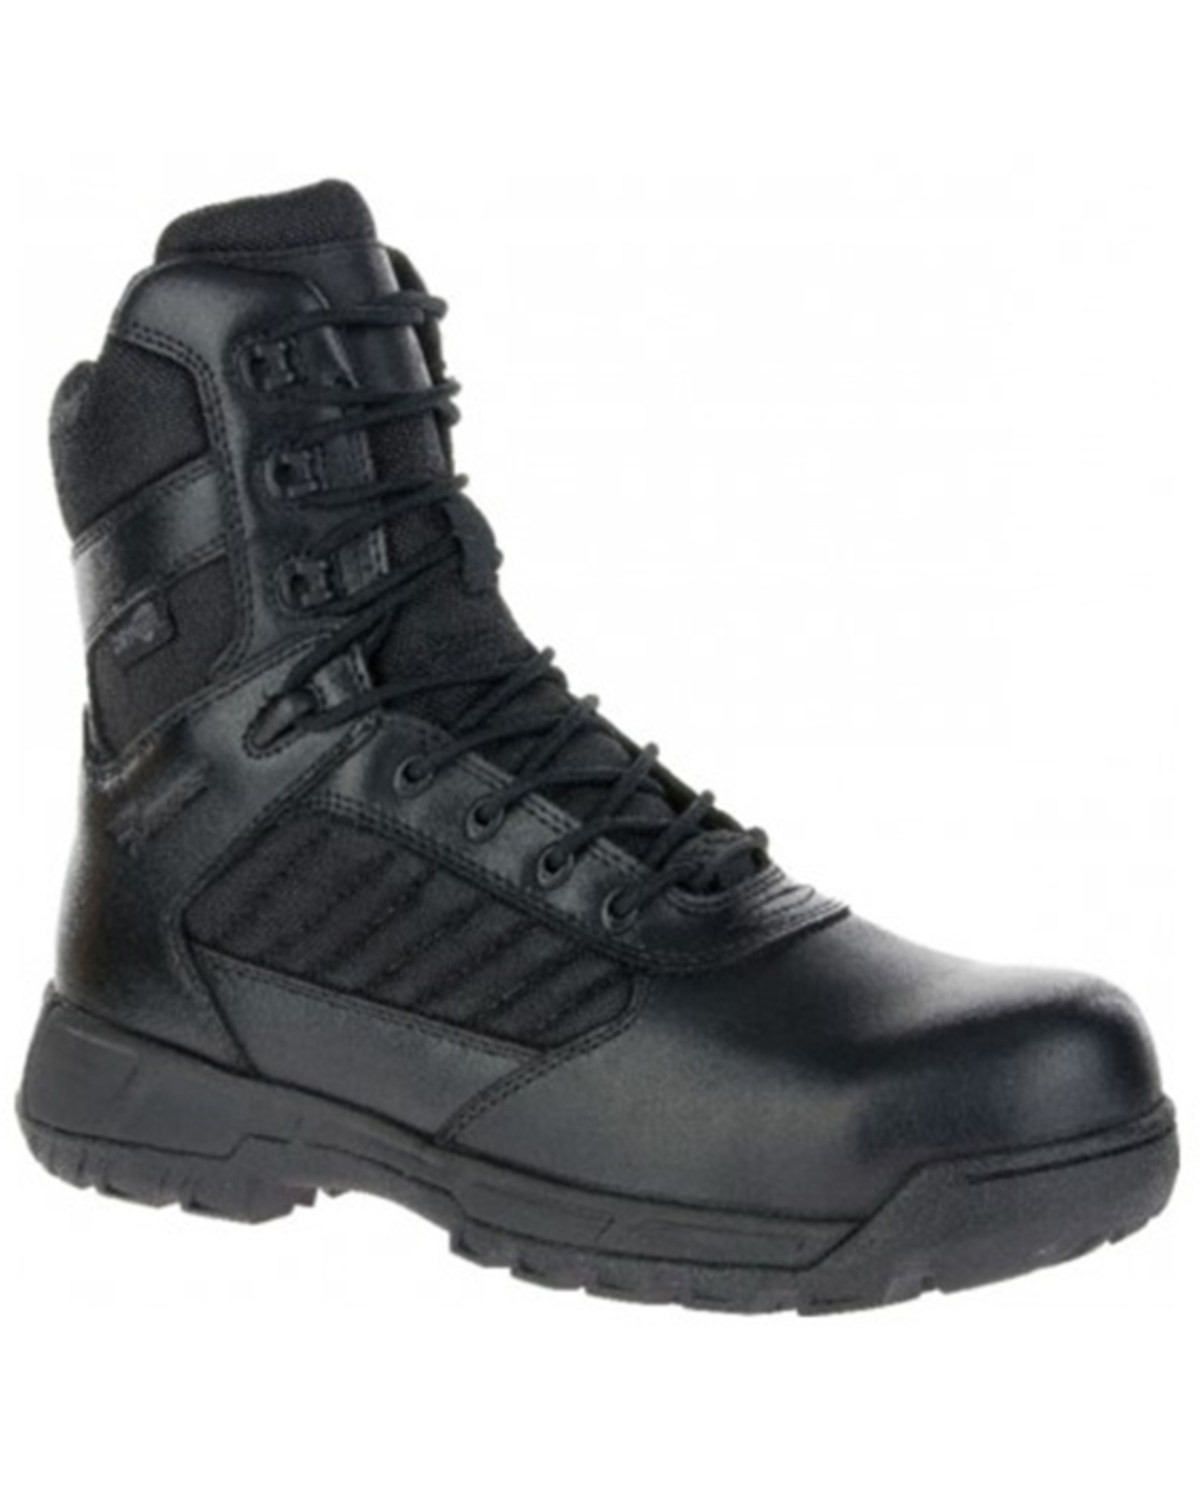 Bates Men's tactical Sport 2 Waterproof Work Boots - Composite Toe